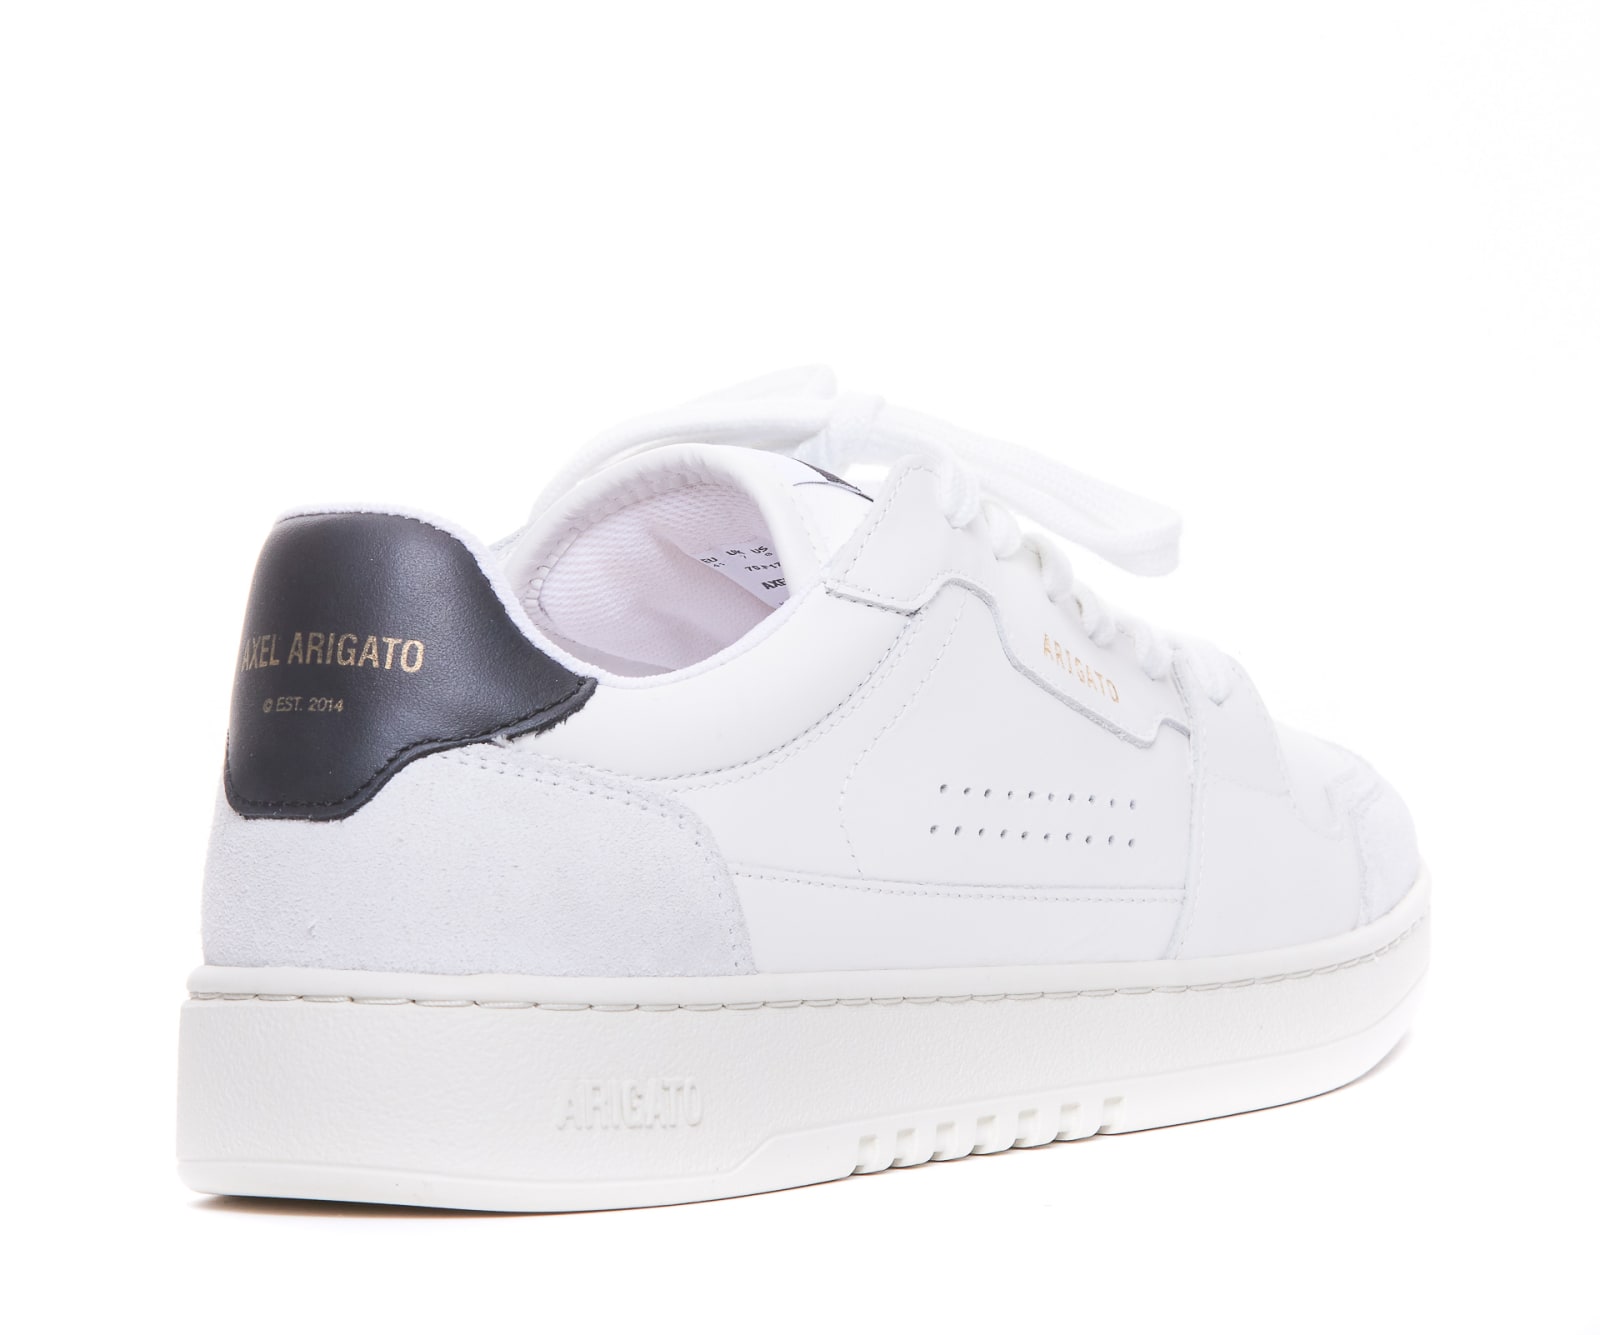 Shop Axel Arigato Dice Lo Sneakers In White